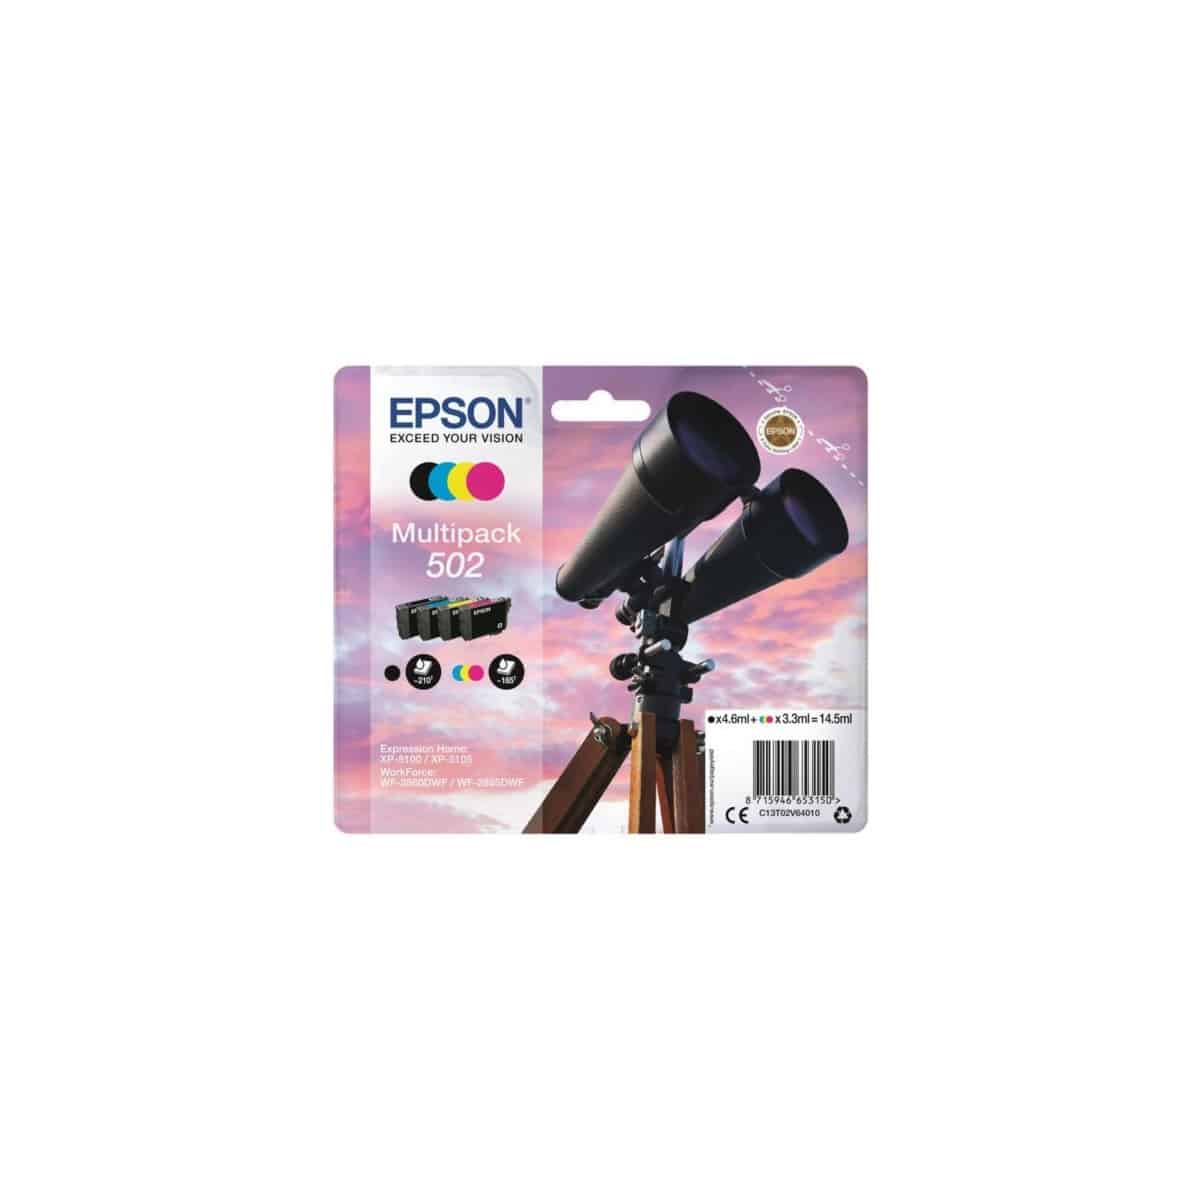 Pour Epson 502 pack de 4 cartouches - Les encriers.com